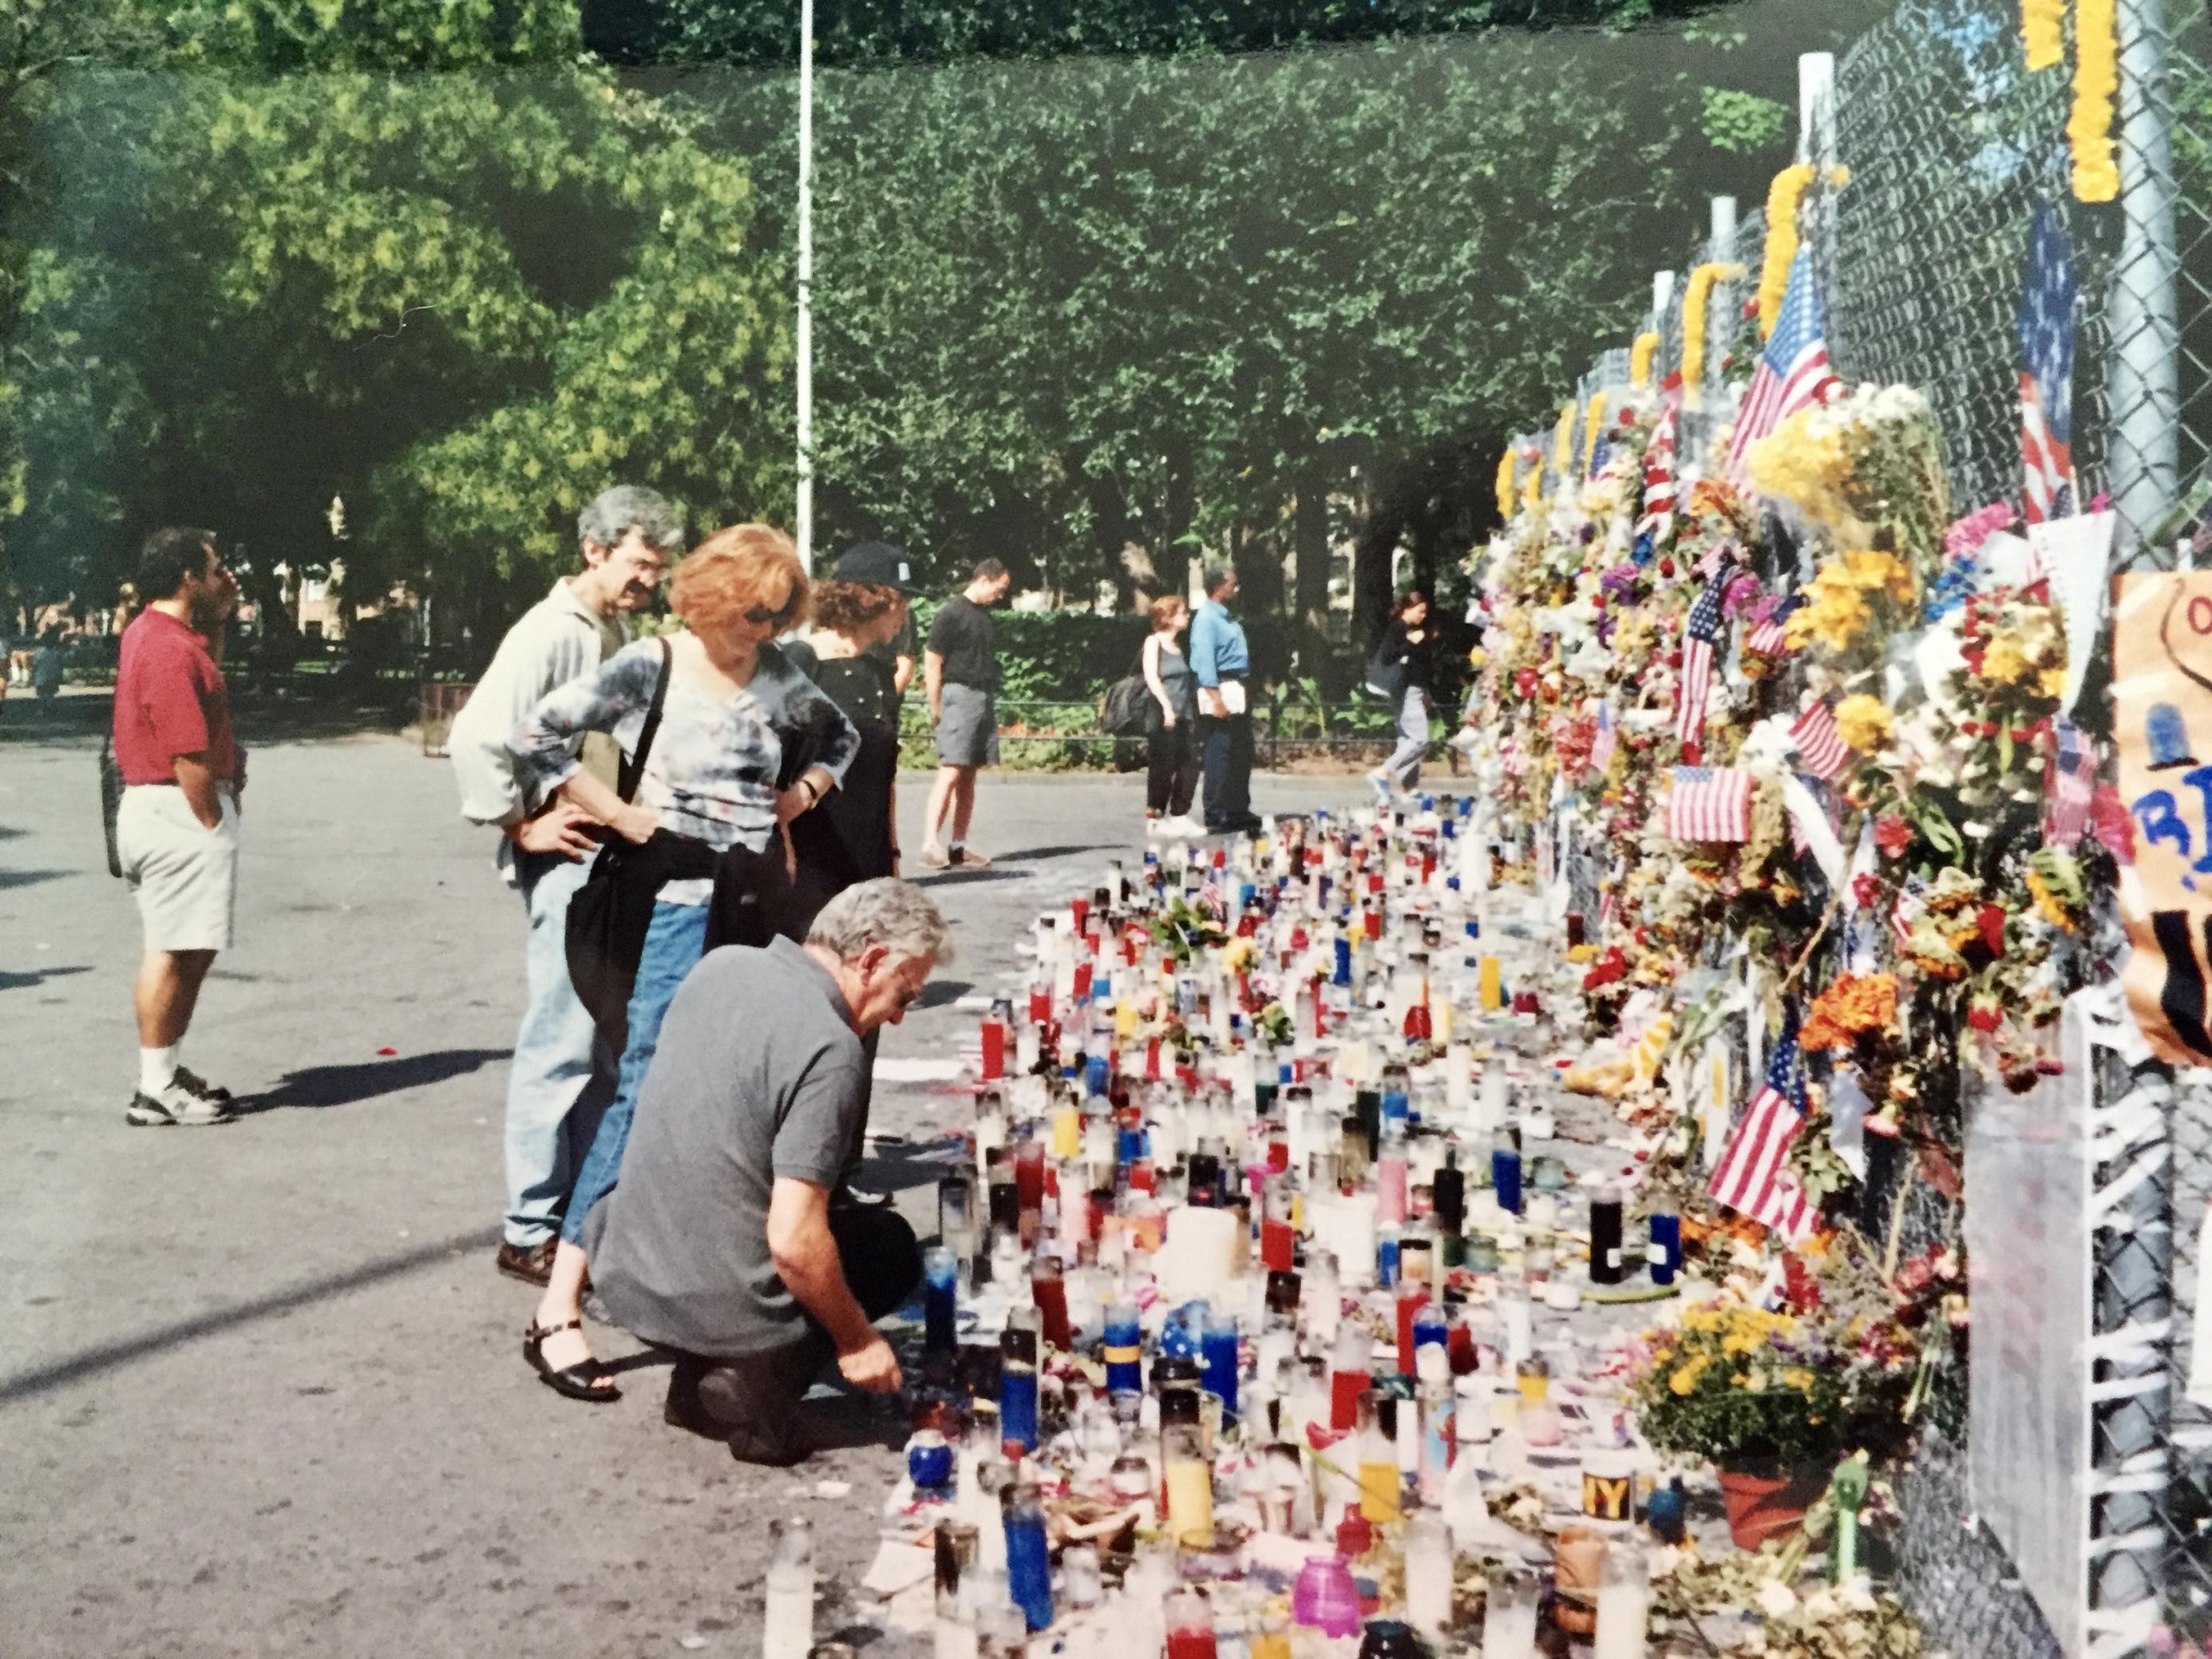 Männer und Frauen stehen vor einem Maschendrahtzaun, wo Kerzen, Fahnen und Kränze an die Opfer der Anschläge vom 11. September erinnern. Im Hintergrund Bäume und ein Park